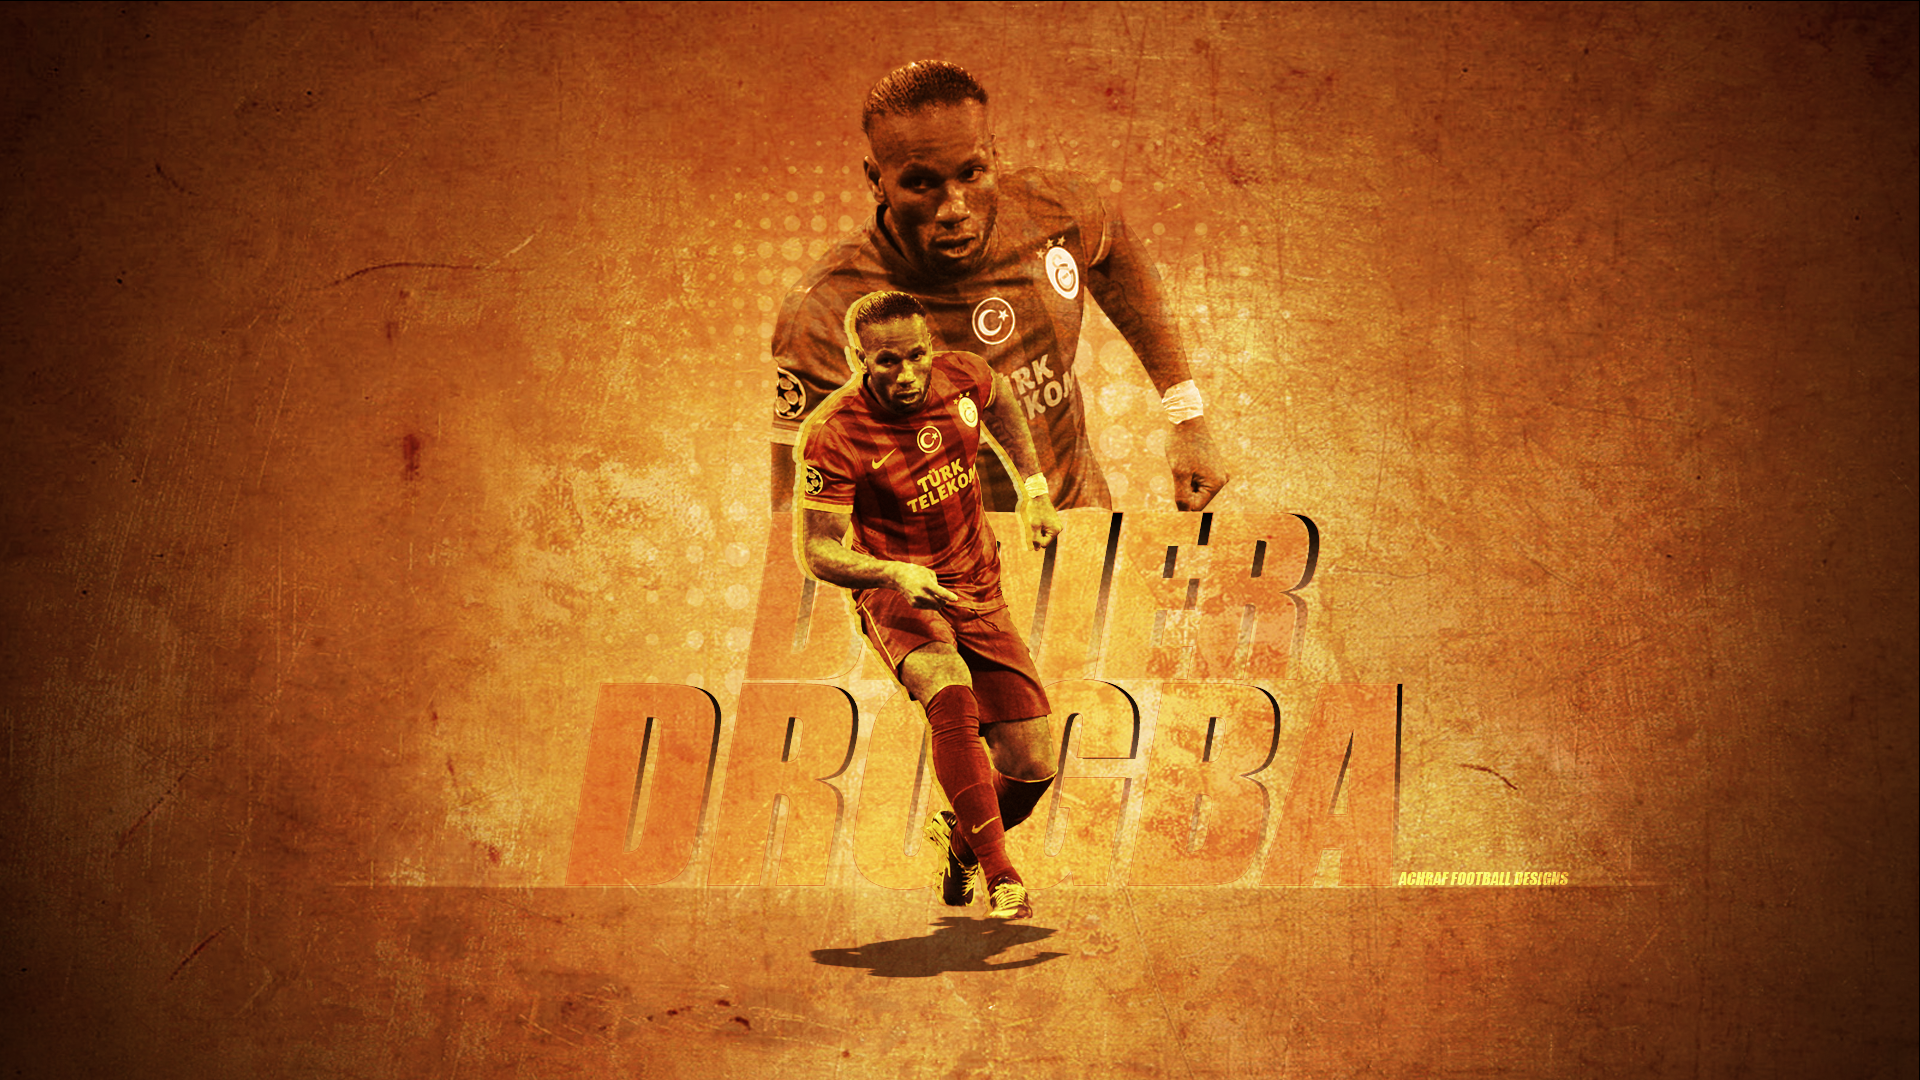 Didier Drogba HD Wallpaper